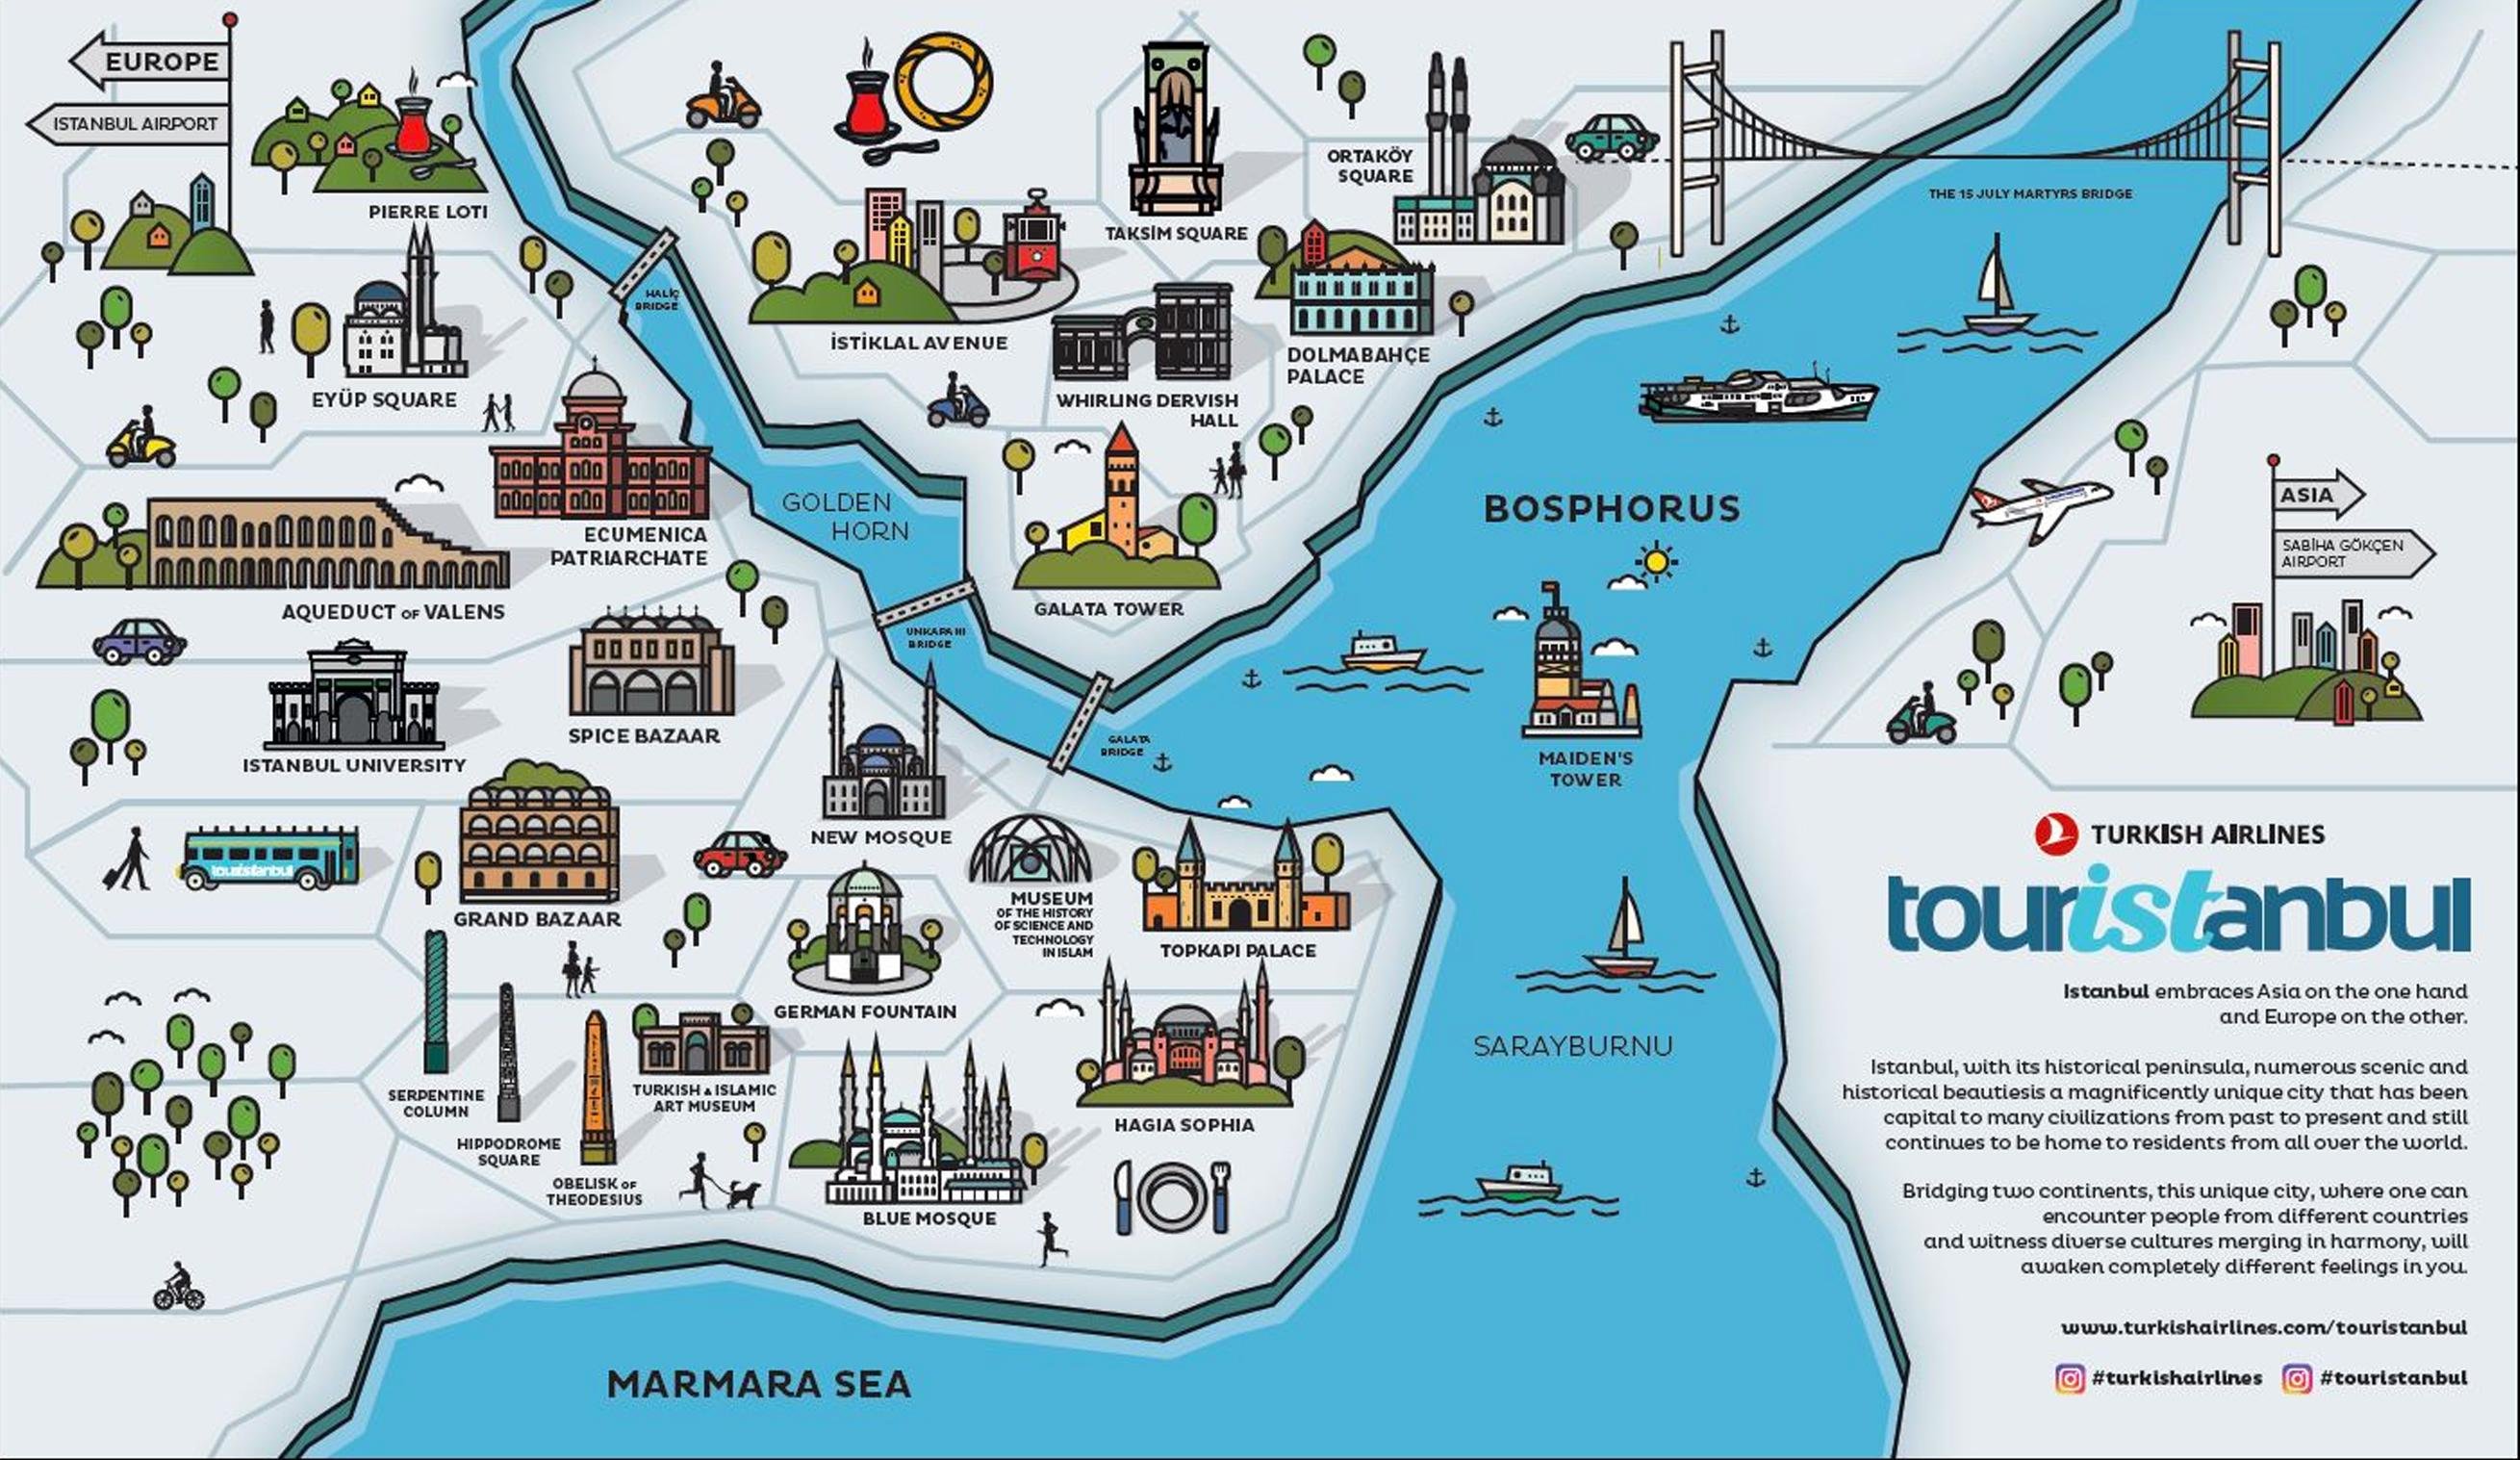 Центр стамбула на карте. Карта Стамбула Султанахмет туристическая. Туристическая карта Стамбула. Карта Стамбула на русском языке с достопримечательностями. Карта центра Стамбула с достопримечательностями.